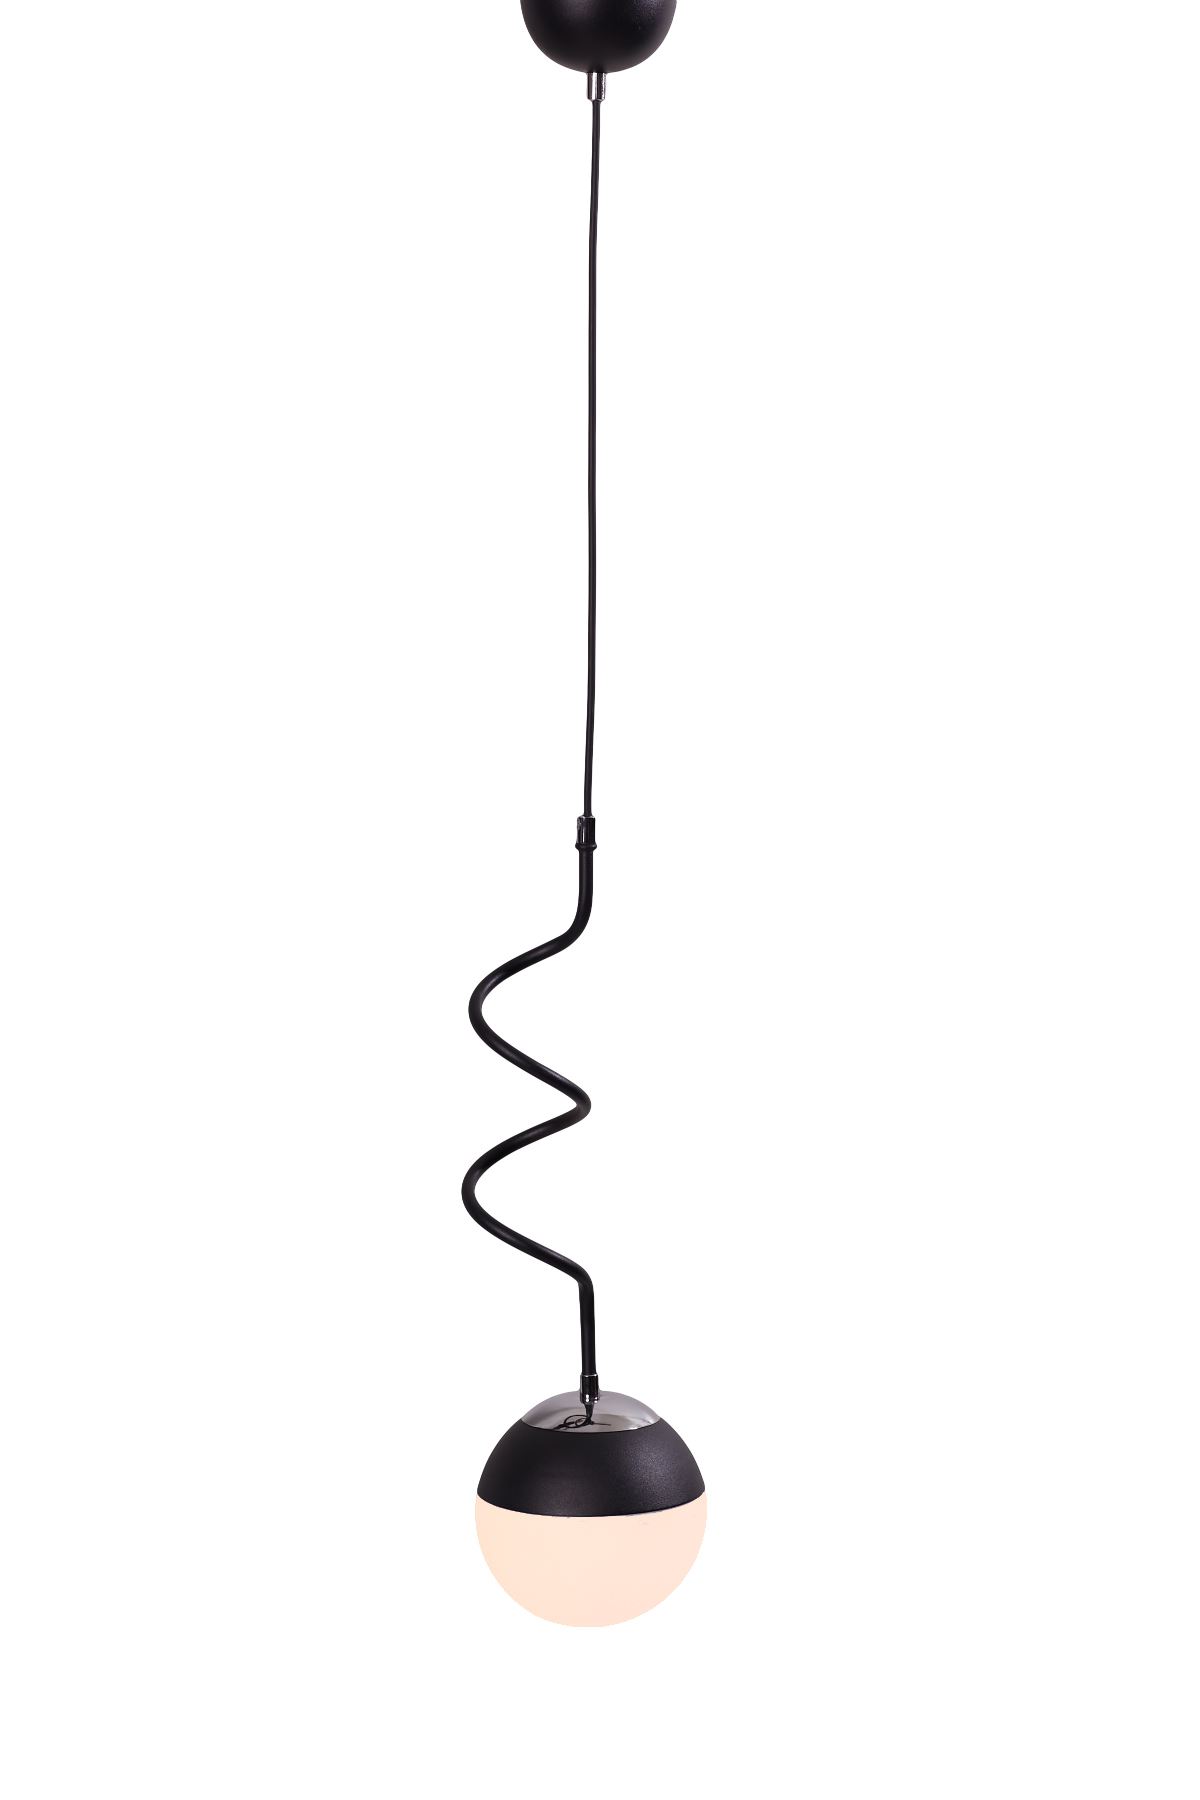 Stella Tekli Krom-Siyah Metal Gövde Beyaz Camlı  Tasarım Lüx  Sarkıt Avize